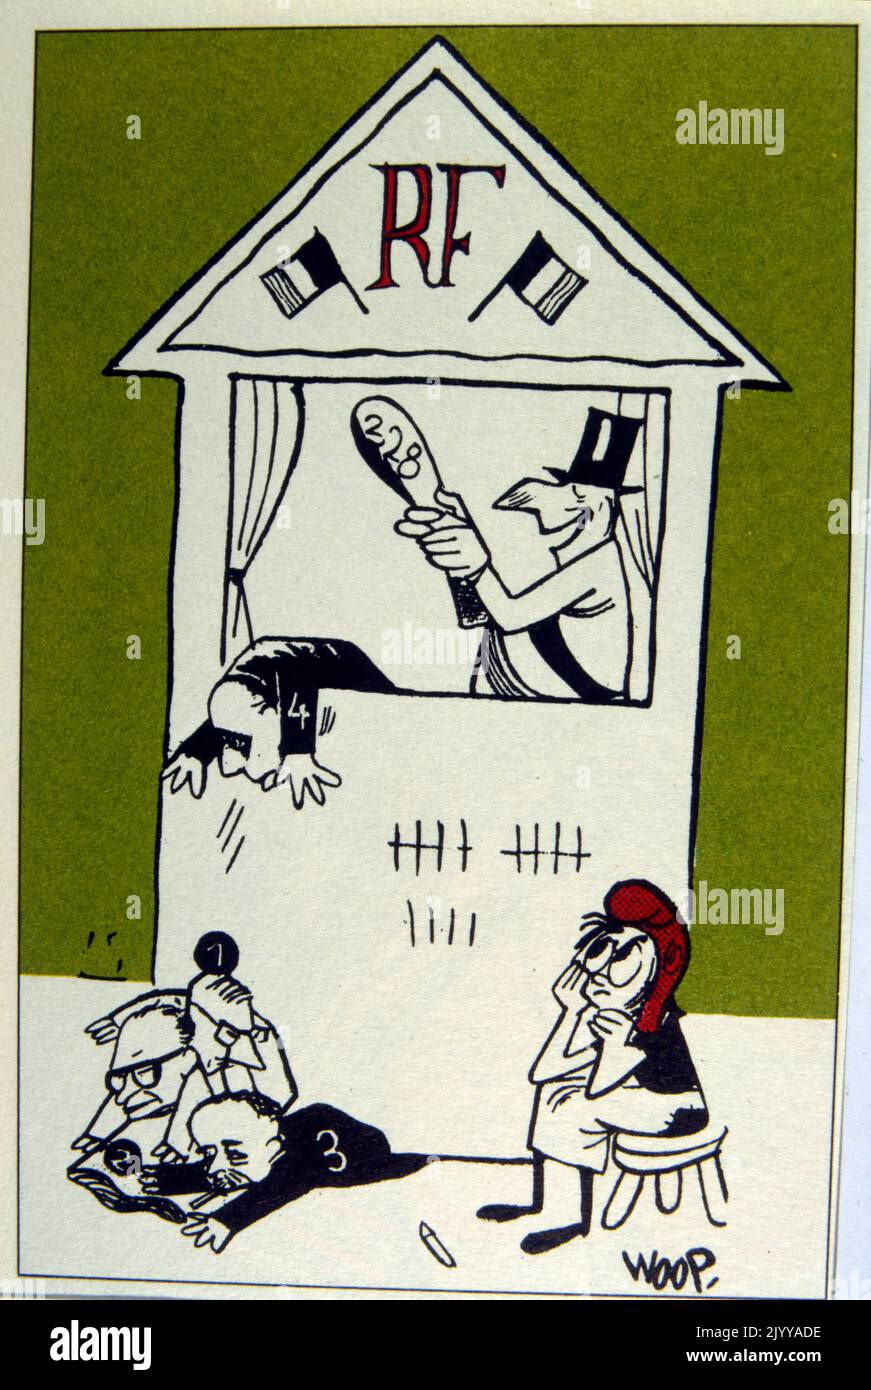 L'illustrazione colorata di un pugno e Judy mostrano personificare figure politiche in modo satirico. Illustrato da Woop. Foto Stock